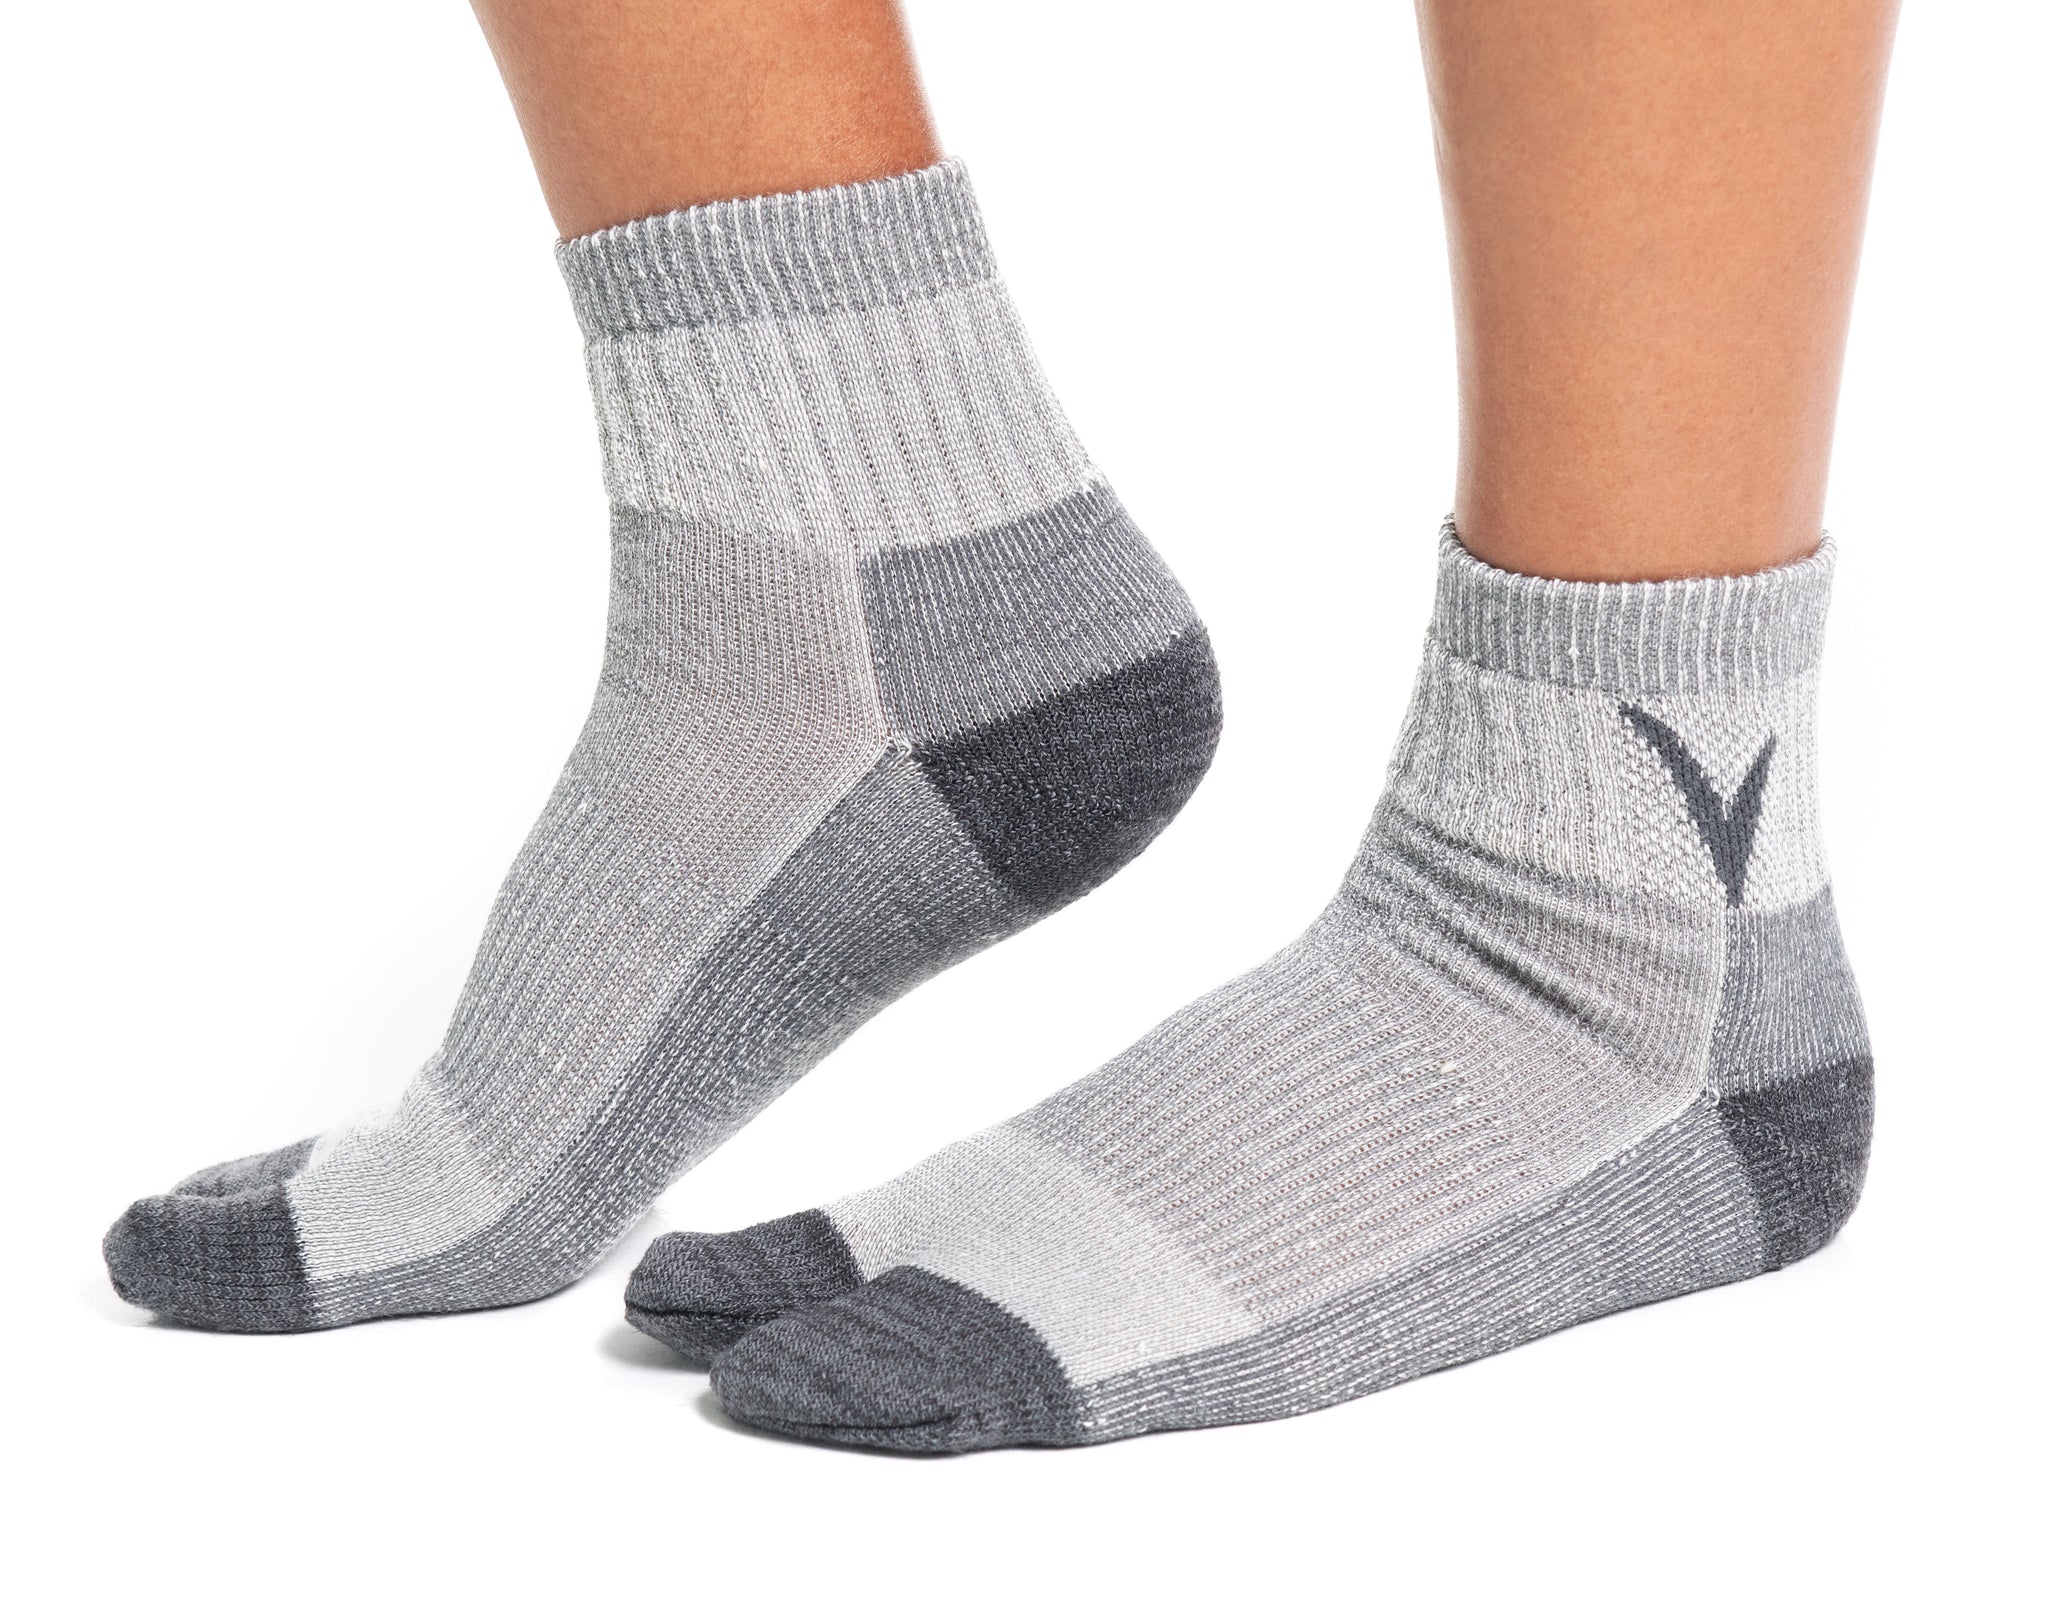 chaco toe socks